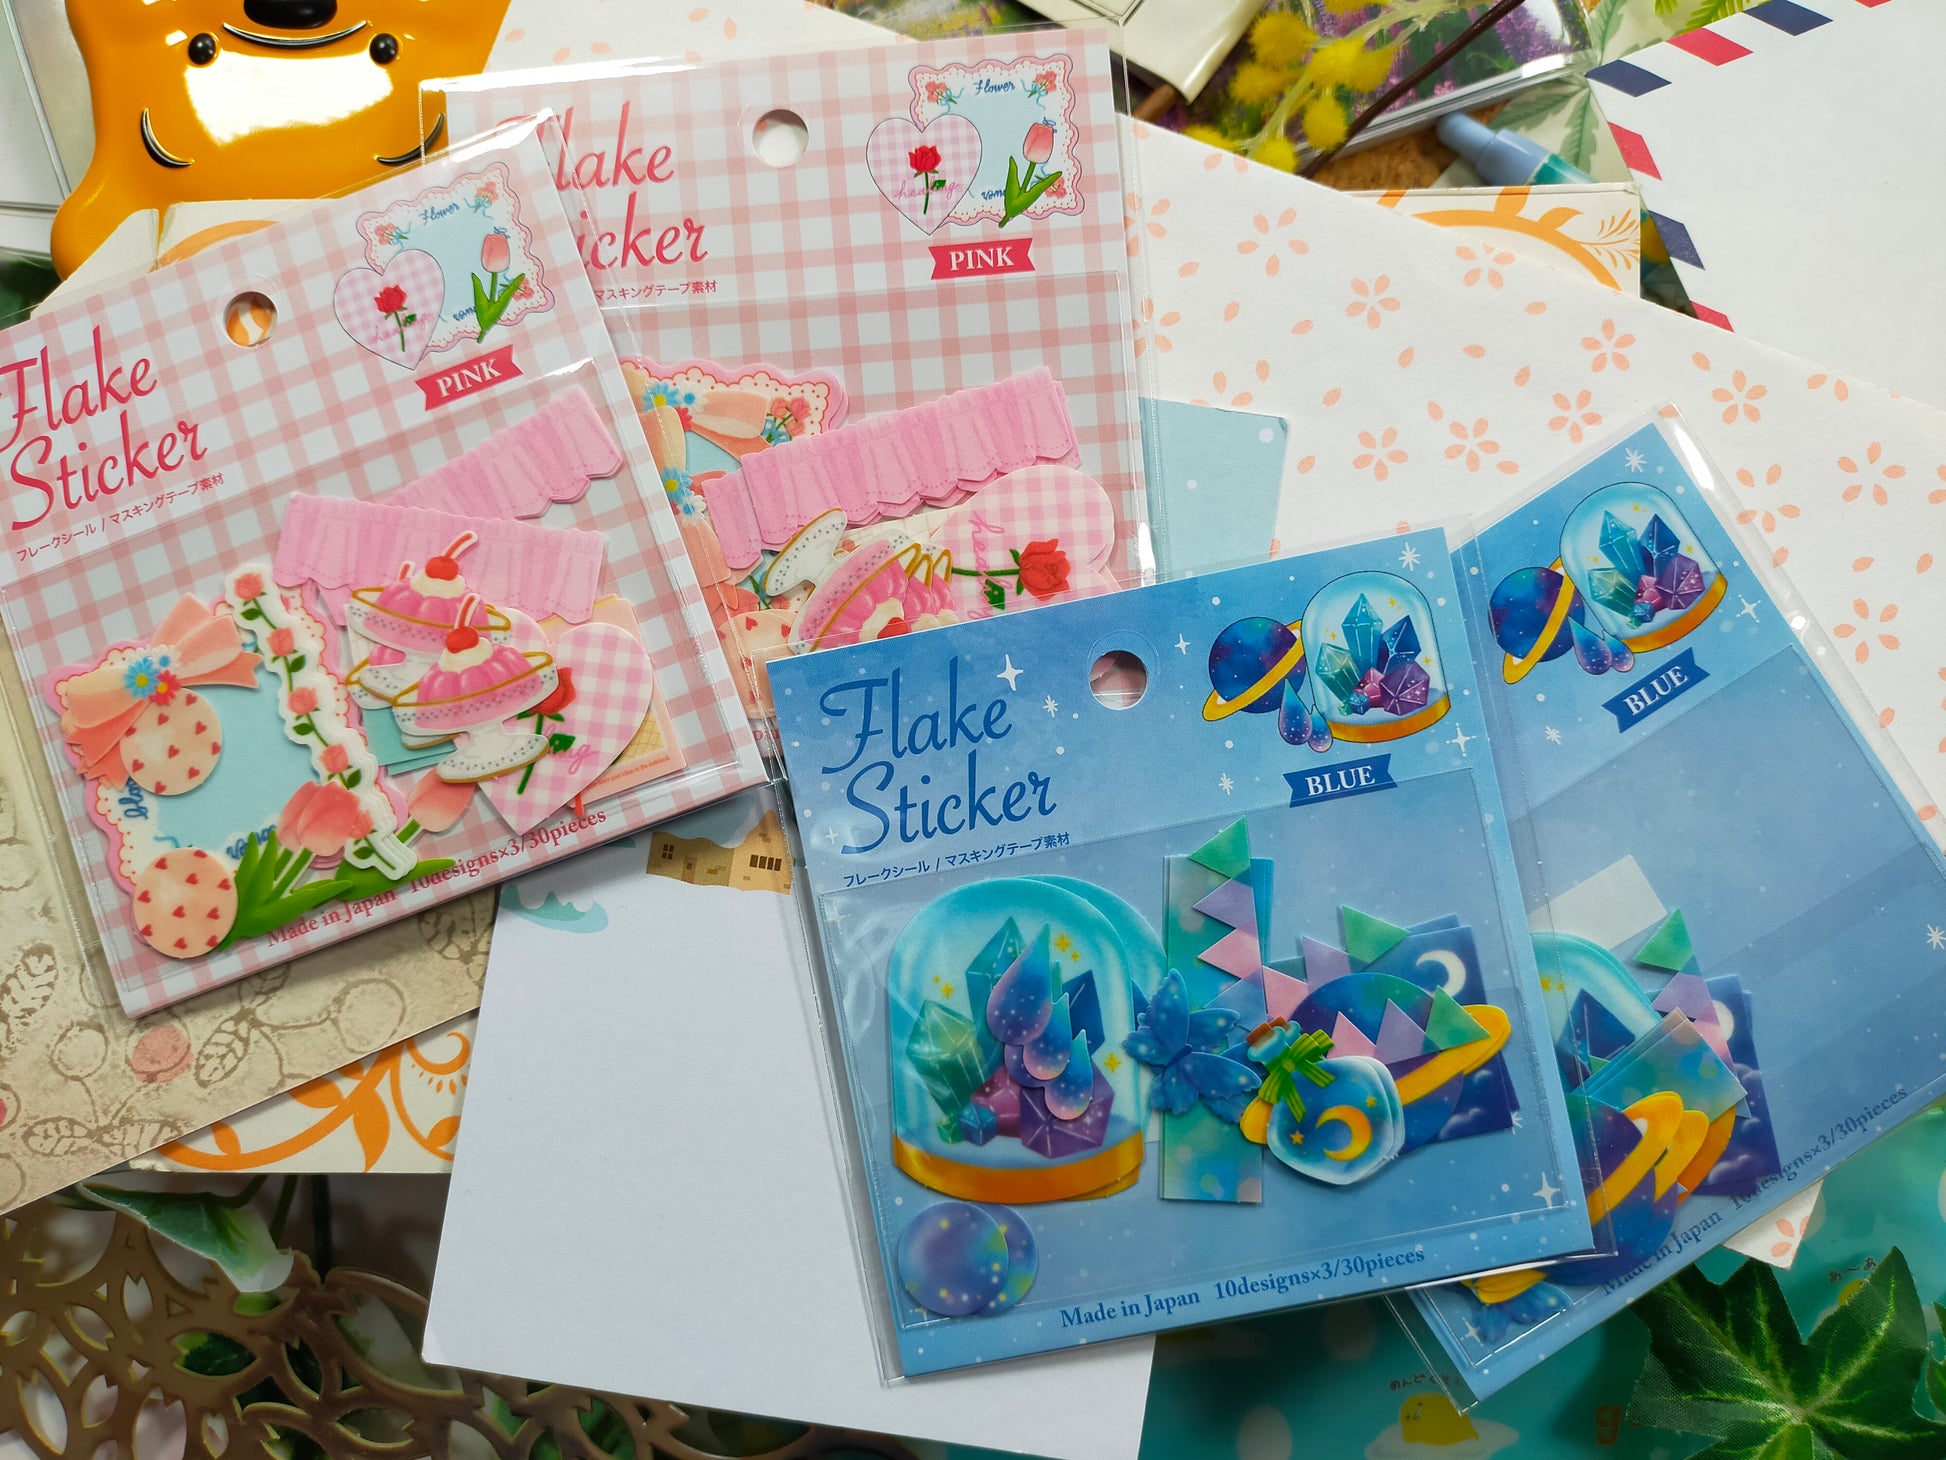 Flake Sticker 10designs*3pieces,GAIA _Pink Flower /Blue Materials